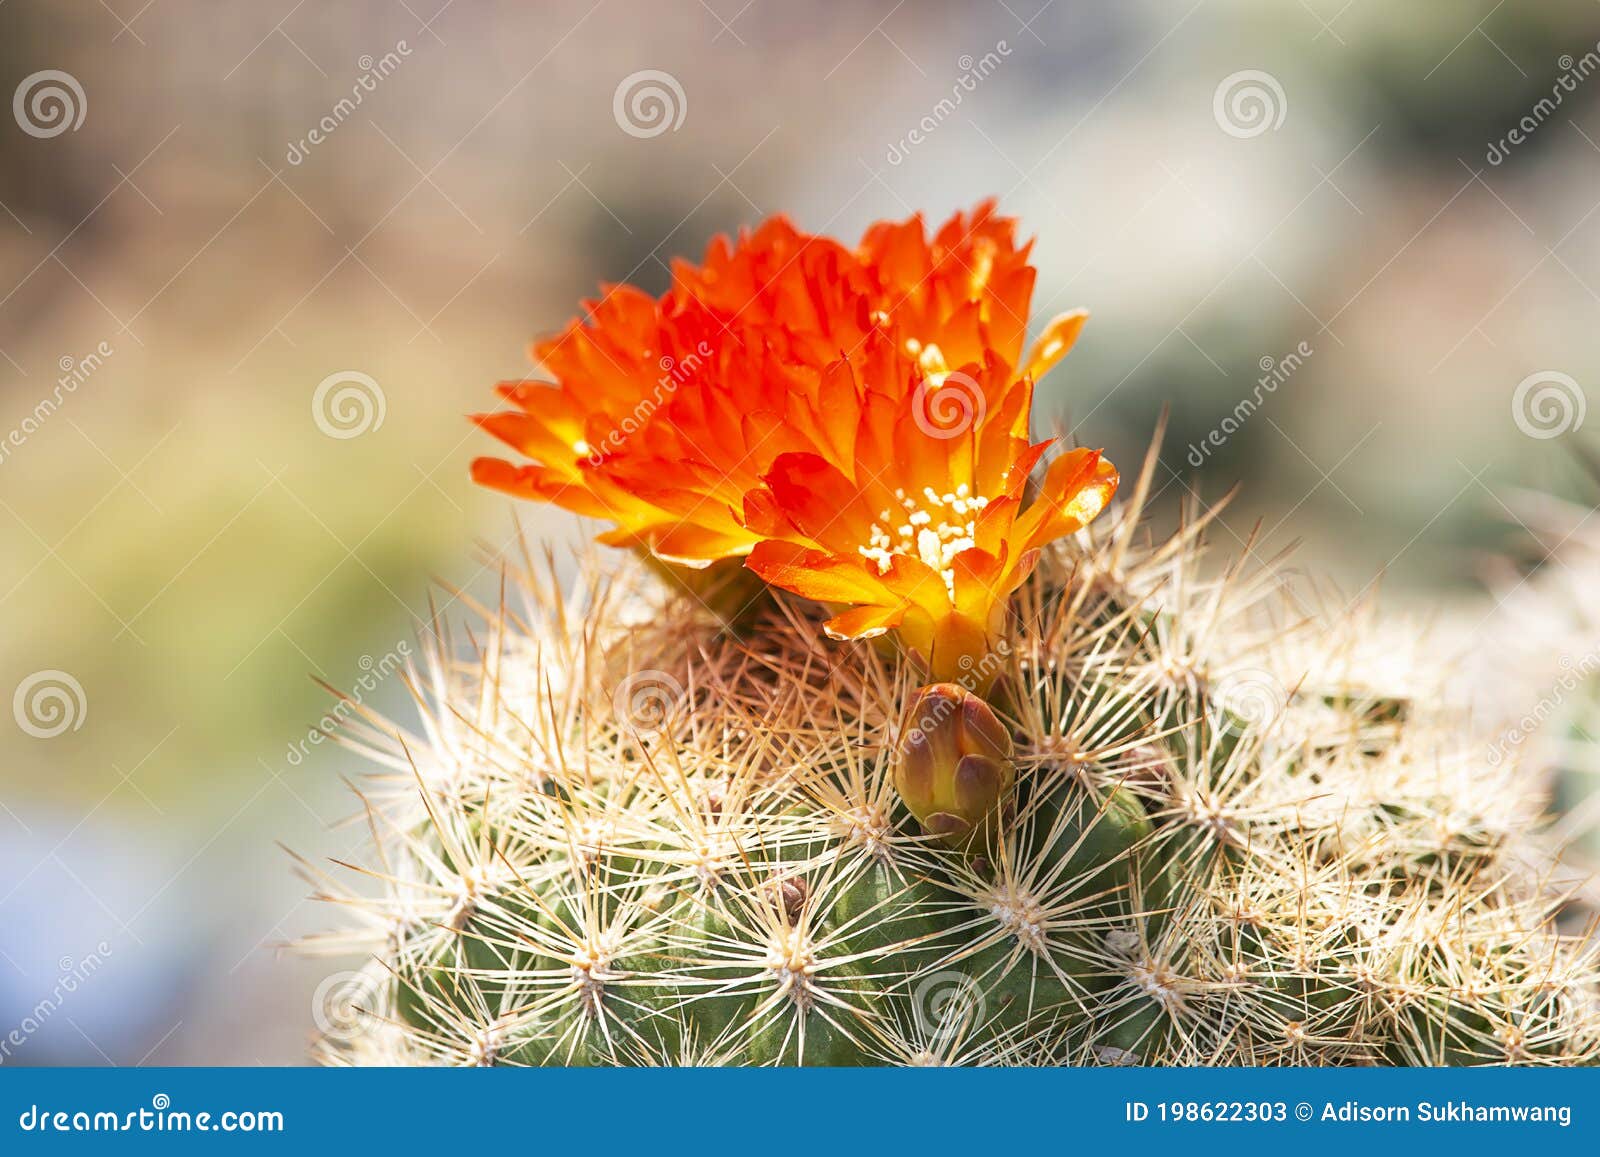 Muchas Flores De Cactus Naranjas En El árbol Con Picos Imagen de archivo -  Imagen de jardines, blanco: 198622303